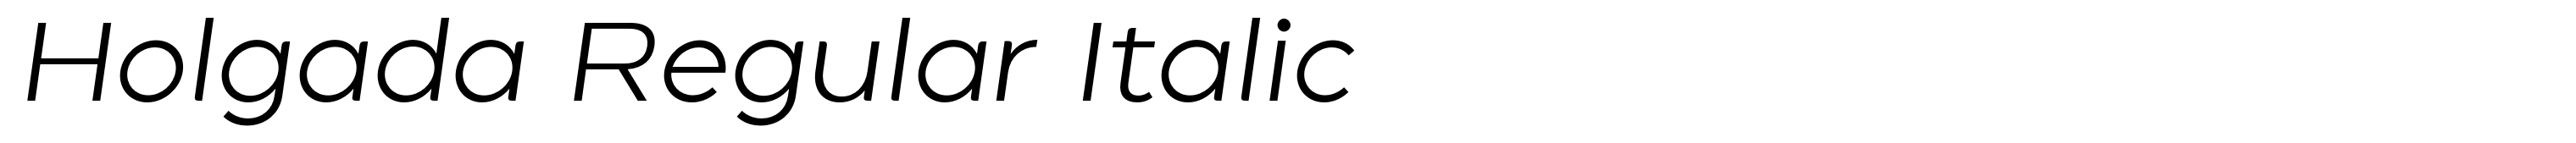 Holgada Regular Italic